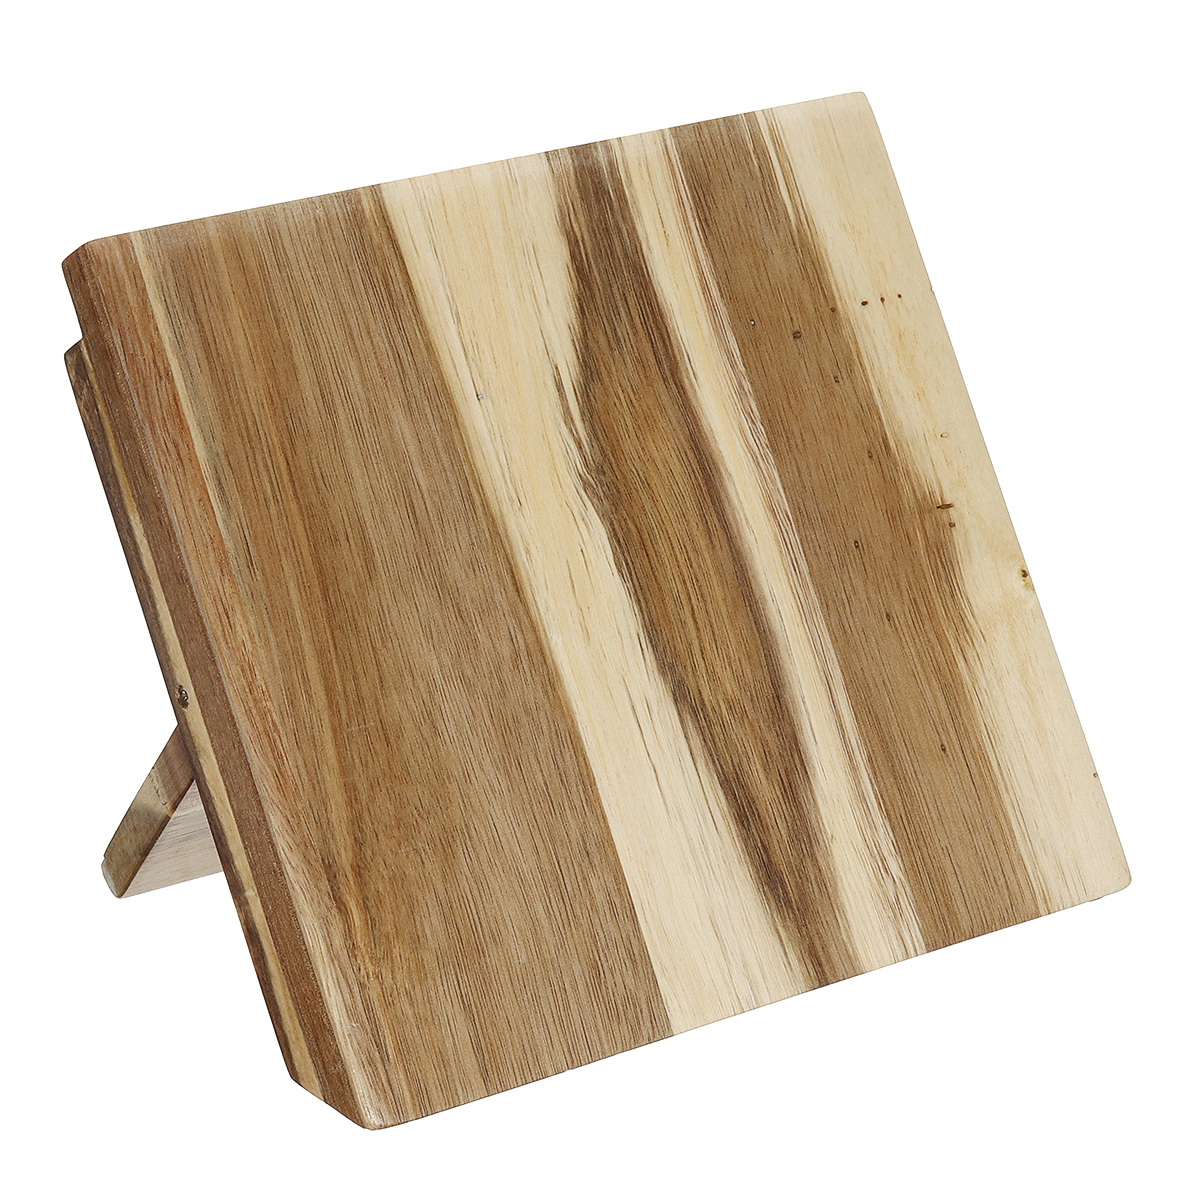 Wooden-Magnetic-Knifes-Holder-Block-Kitchen-Cookware-Cutlery-Storage-Organizer-Kitchen-Storage-Conta-1626936-6